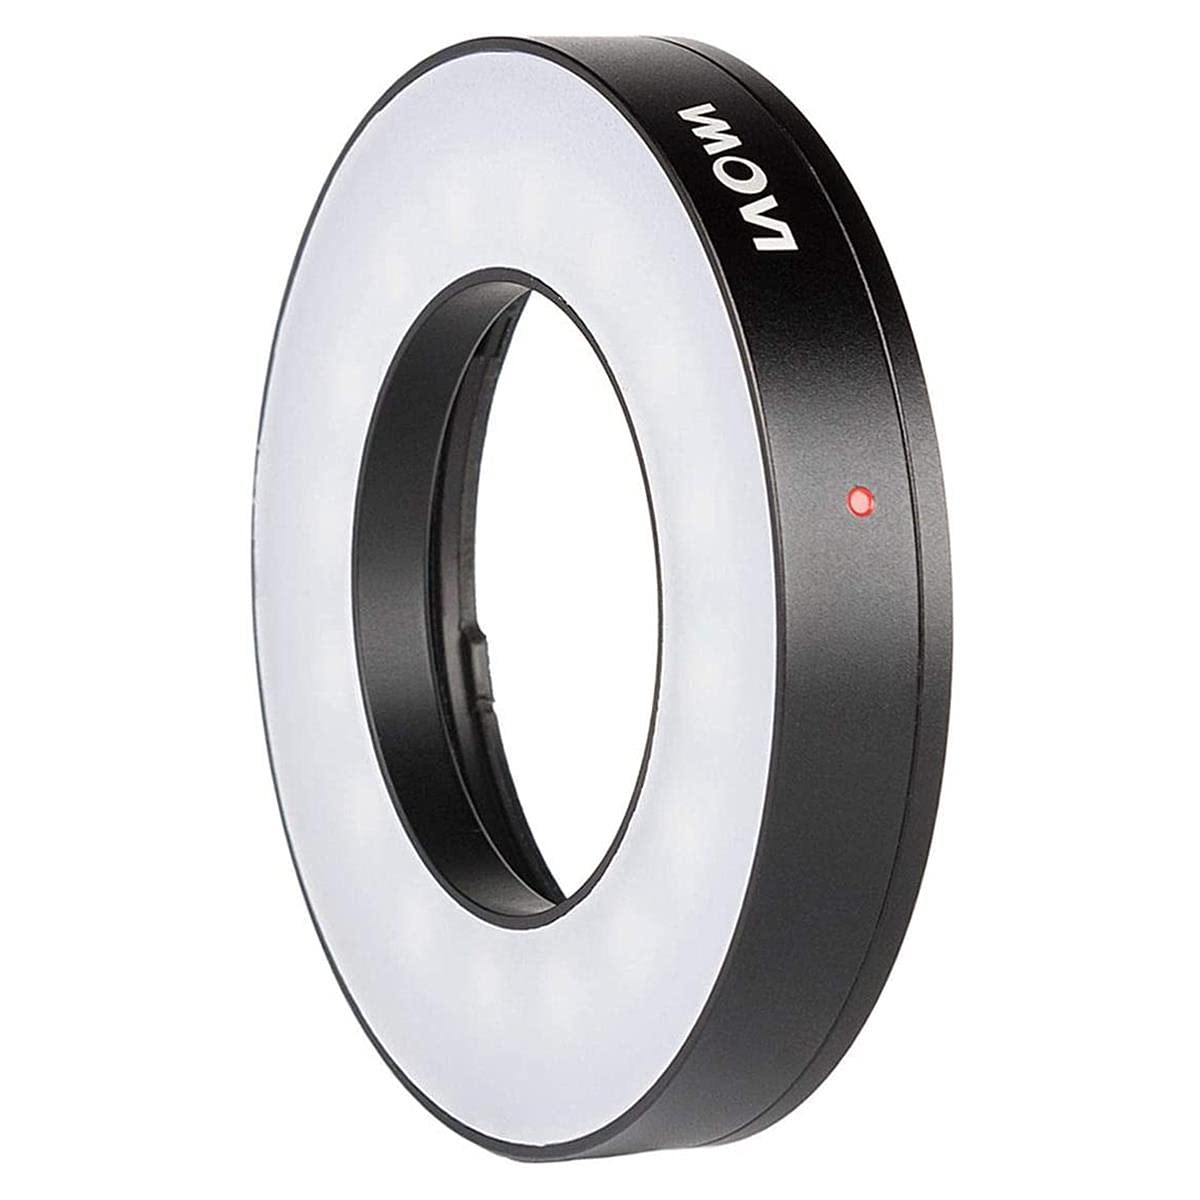 LAOWA LED Ring Light Pour 25mm F2.8 Ultra Macro